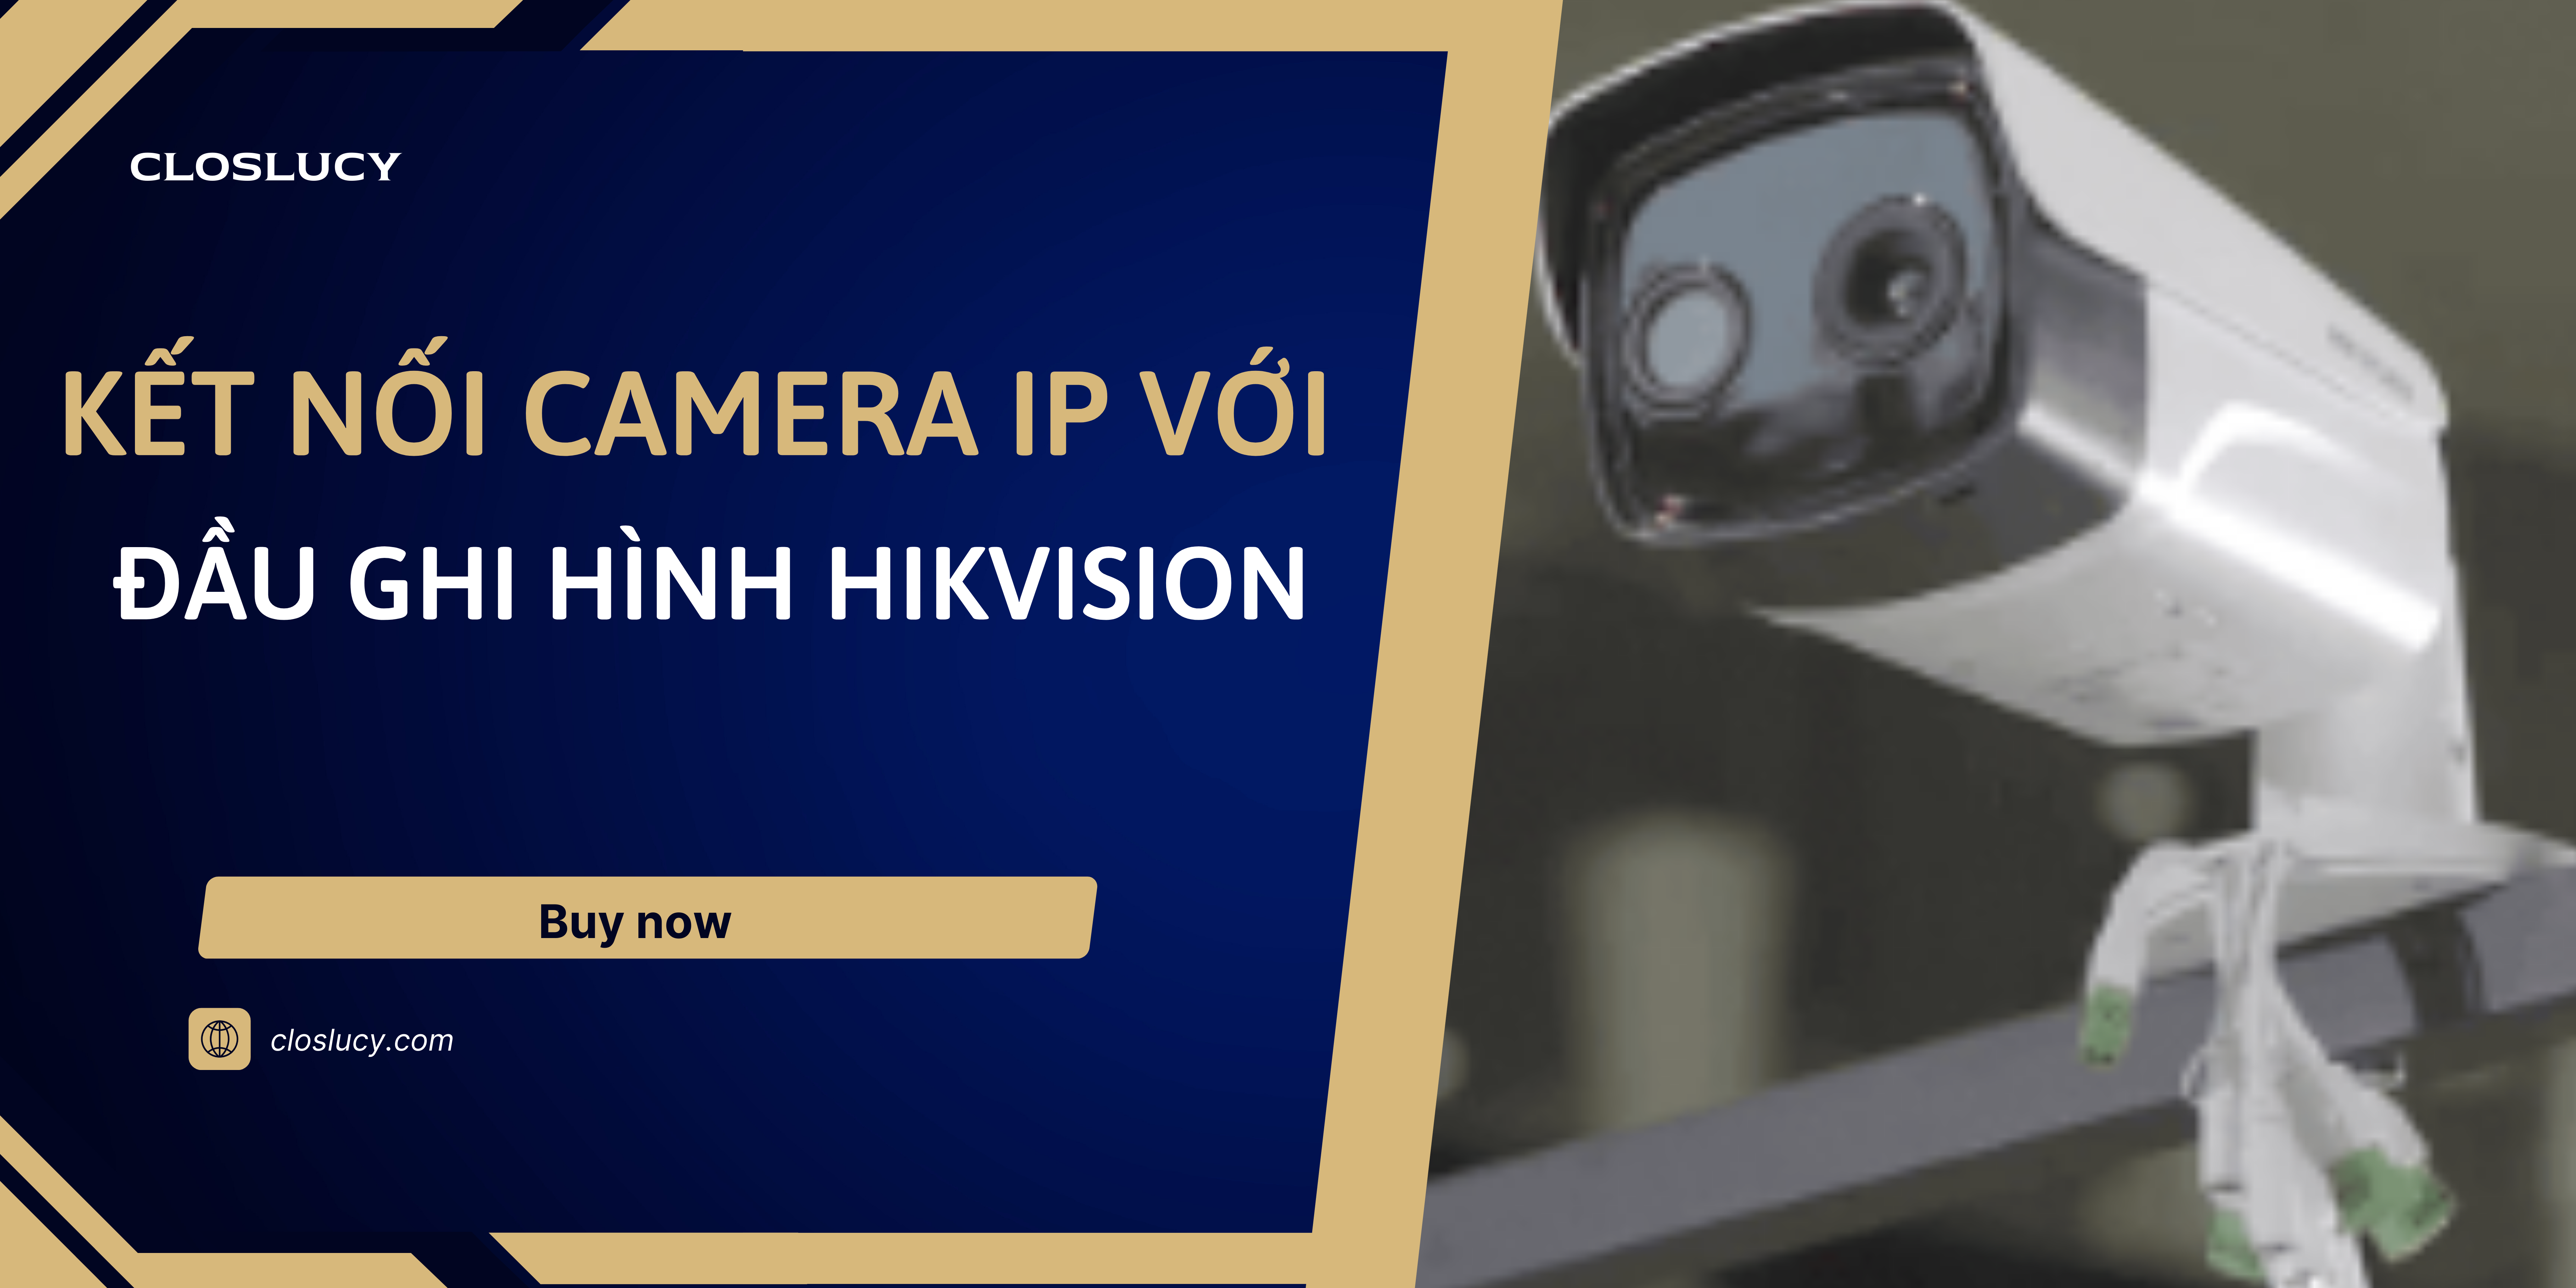 Kết nối camera ip với đầu ghi hình Hikvision